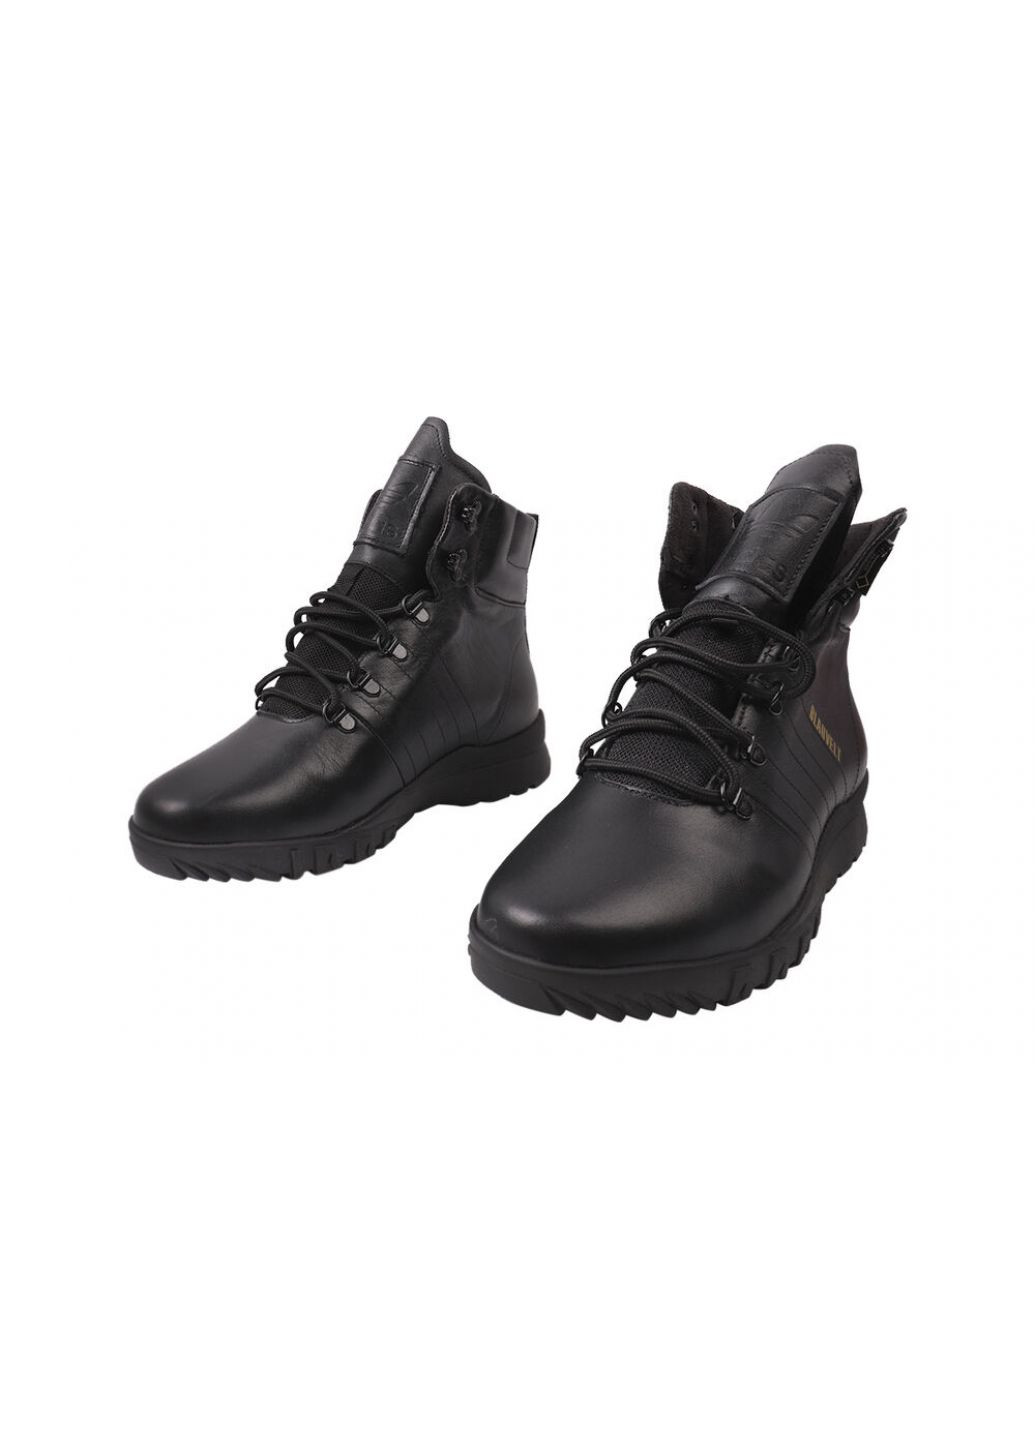 Черные ботинки мужские из натуральной кожи, на низких ходу, на шнуровке, черные, украина New Man